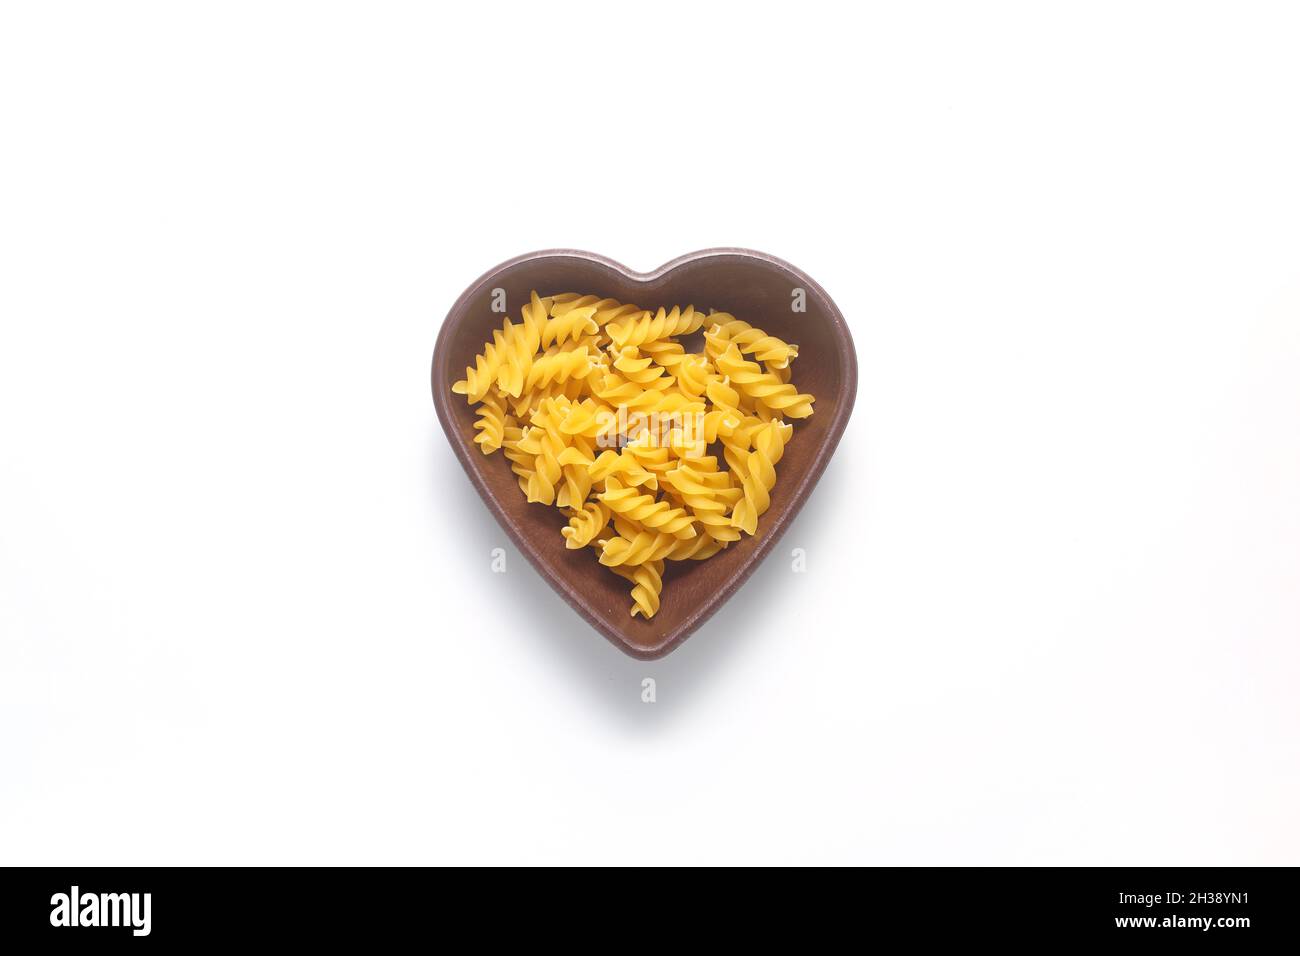 Pasta a forma di del cuore fotografia stock. Immagine di pranzo - 29227532